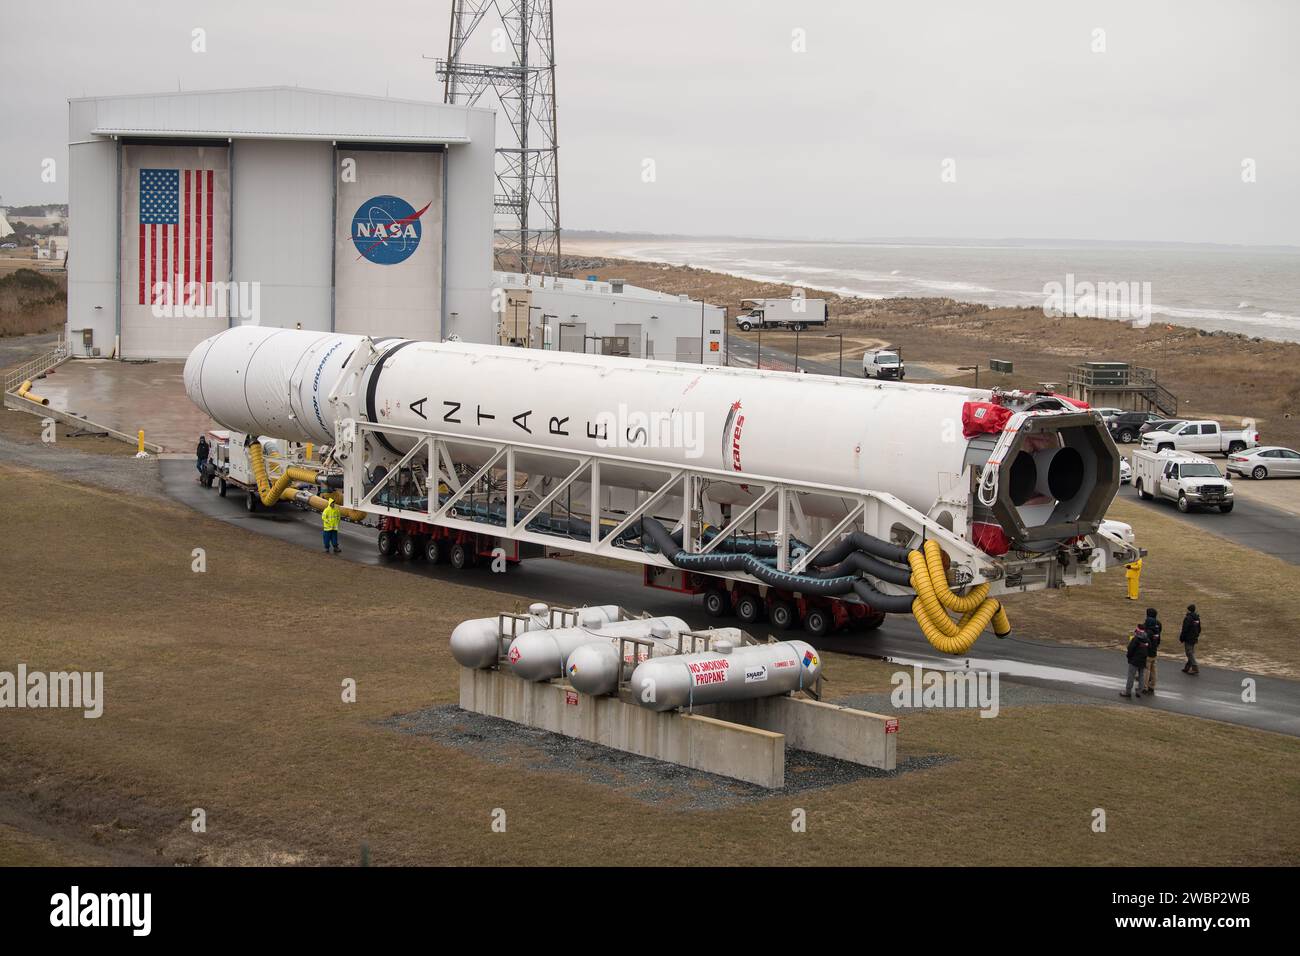 Un razzo Northrop Grumman Antares viene lanciato sul Pad-0A, mercoledì 5 febbraio 2020, presso la Wallops Flight Facility della NASA in Virginia. La tredicesima missione di rifornimento di carichi stipulata da Northrop Grumman con la NASA alla stazione spaziale Internazionale consegnerà più di 7.500 chili di scienza e ricerca, forniture per l'equipaggio e hardware per veicoli al laboratorio orbitale e al suo equipaggio. La navicella spaziale CRS-13 Cygnus prende il nome dal primo astronauta afroamericano, il maggiore Robert Henry Lawrence Jr. Ed è prevista per il lancio alle 17:39 EST domenica 9 febbraio. Foto Stock